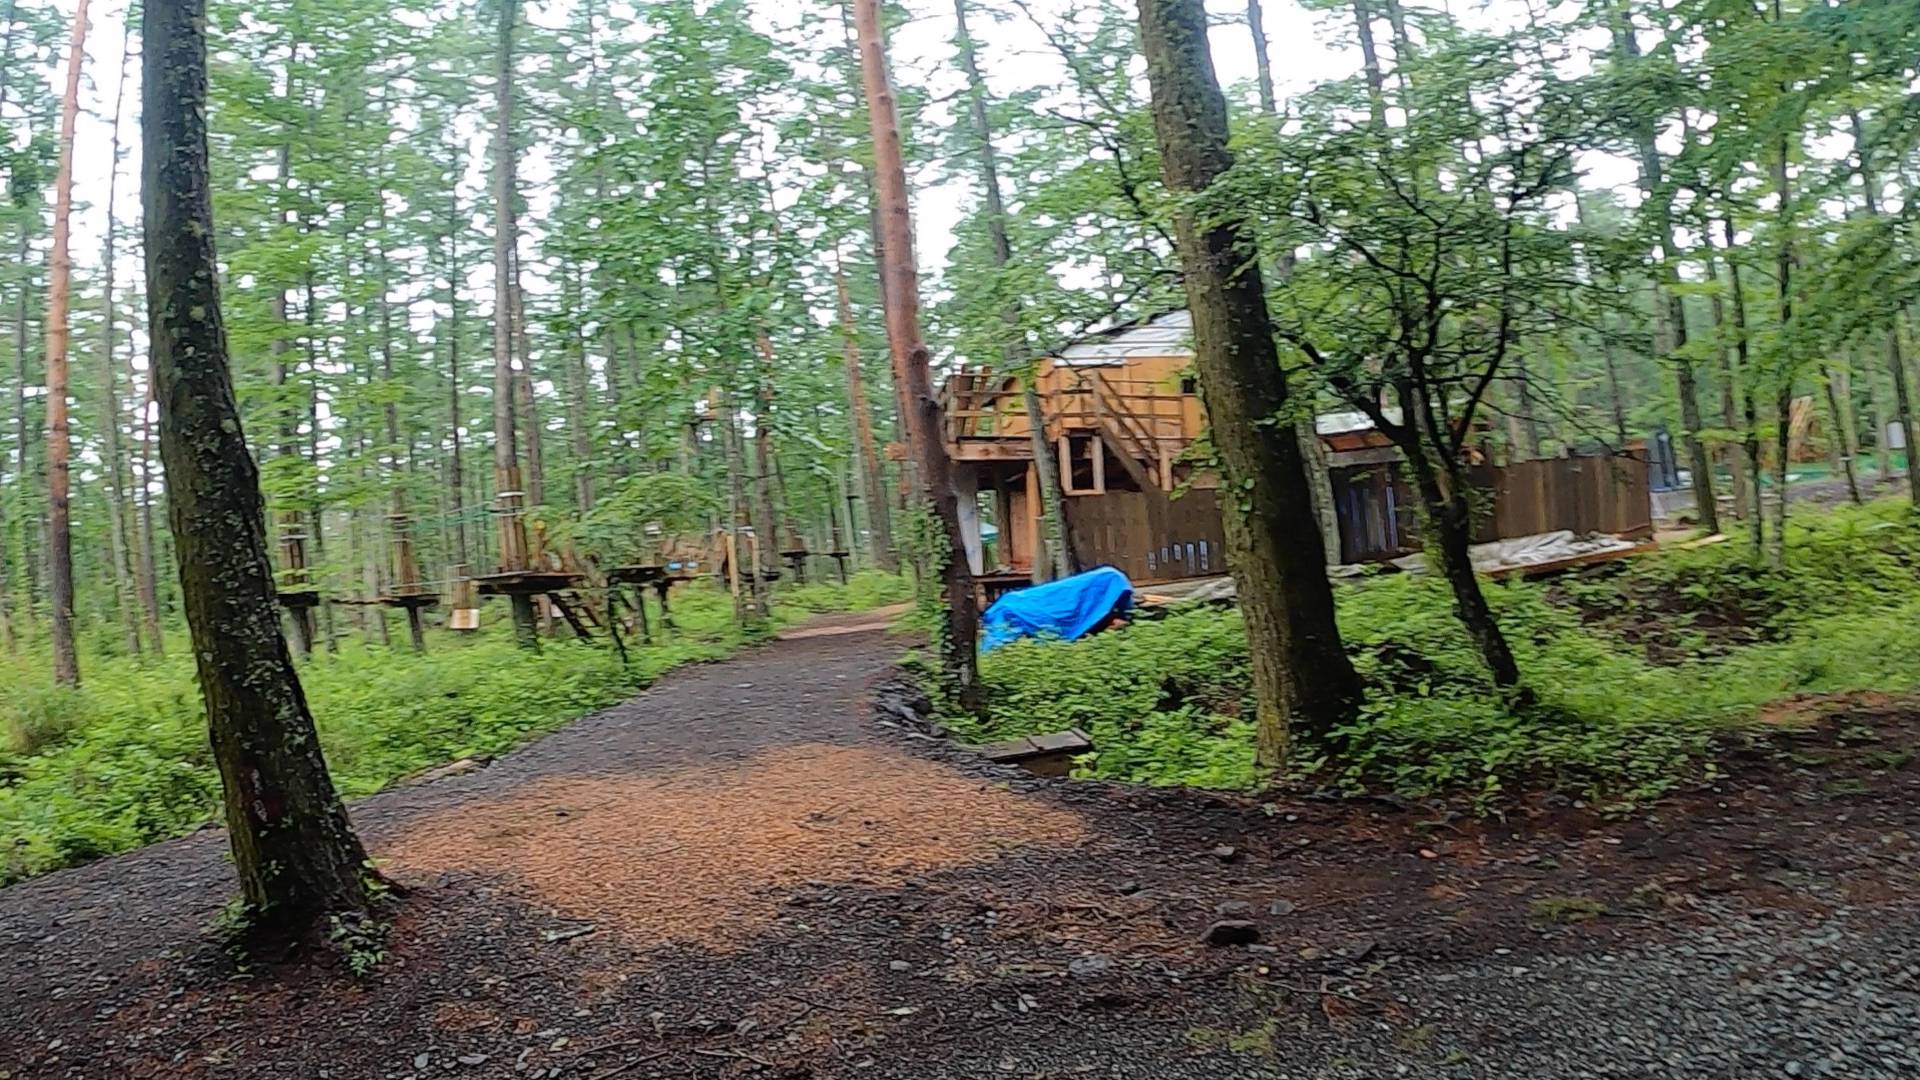 【軽バンキャンプ9-2】雨で空いてた&GREEN(アンドグリーン)キャンプ場で車中泊キャンプ(後編)